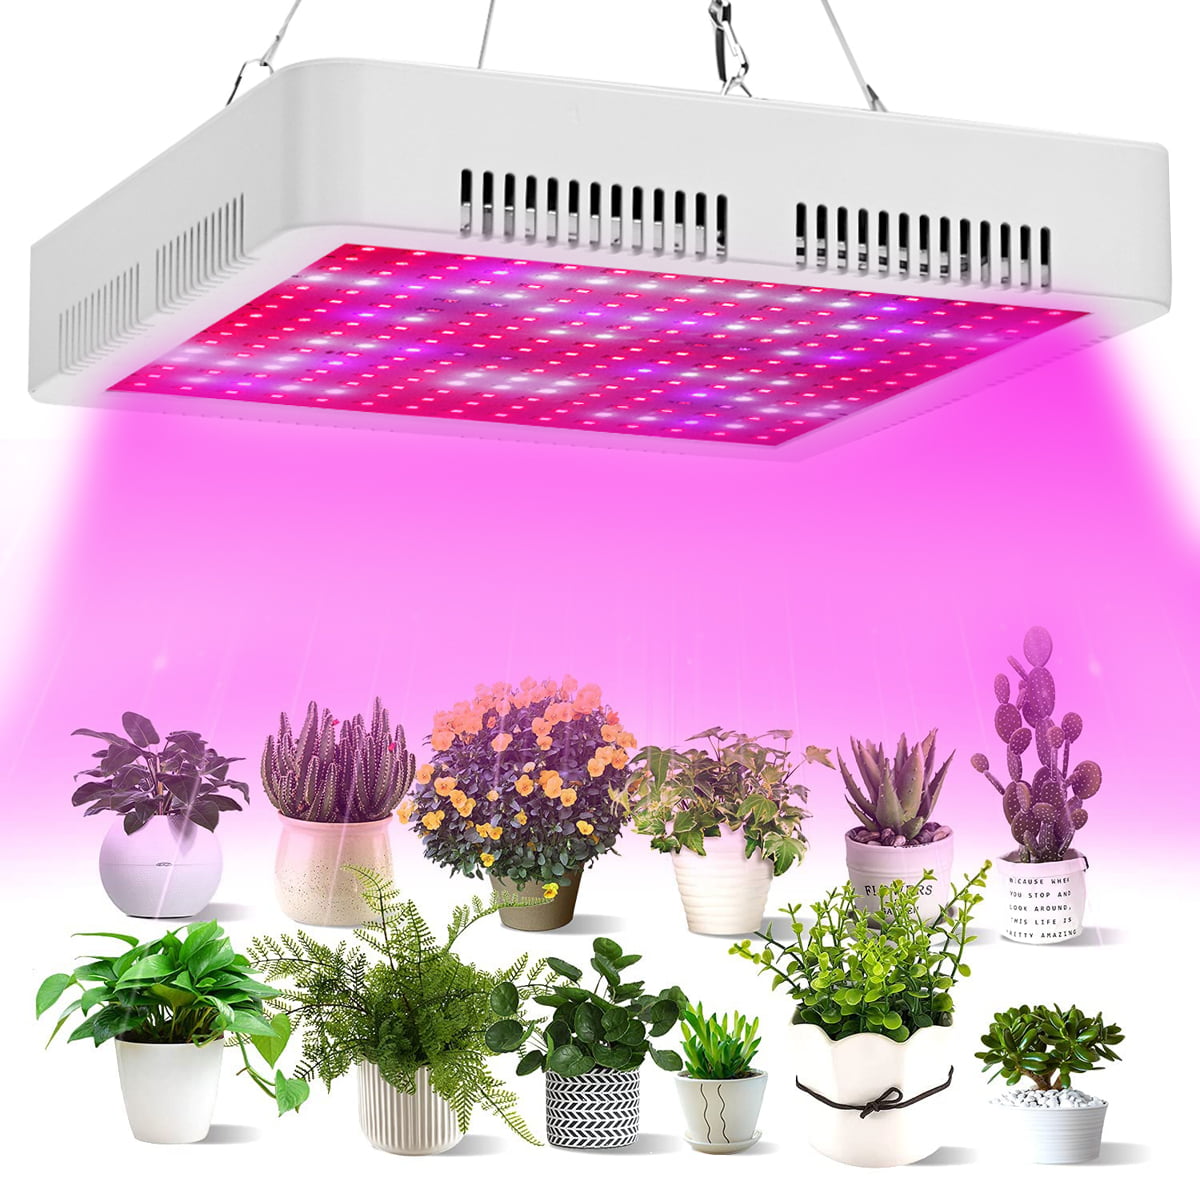 2 PACK 45W LED Grow Light Full Spectrum Panel Hydro Veg Flower Indoor Plant Lamp 